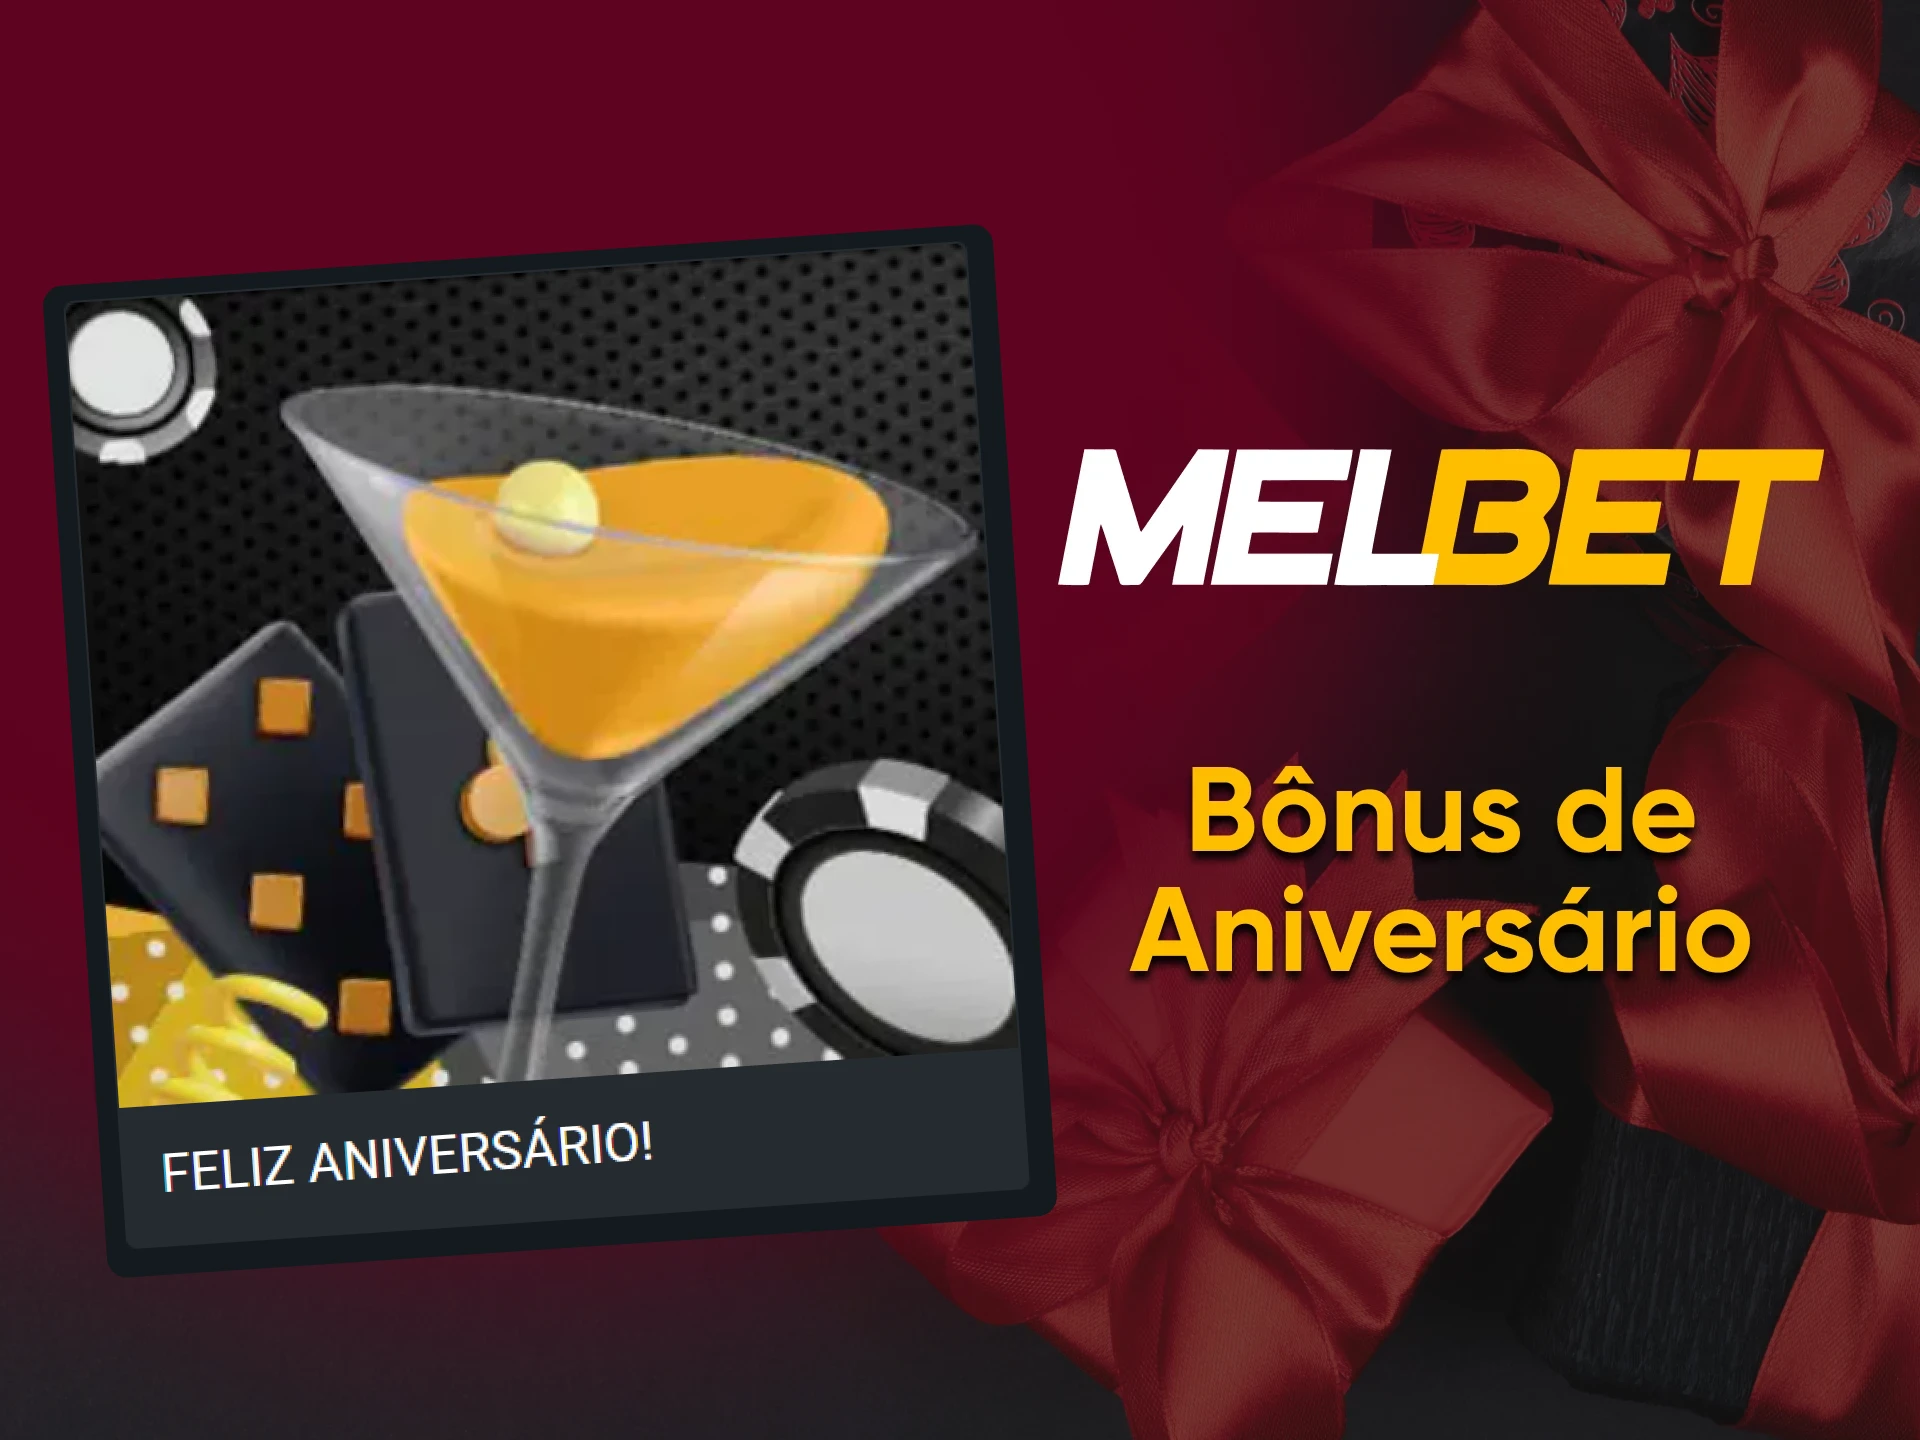 O site da Melbet tem um bônus de aniversário.